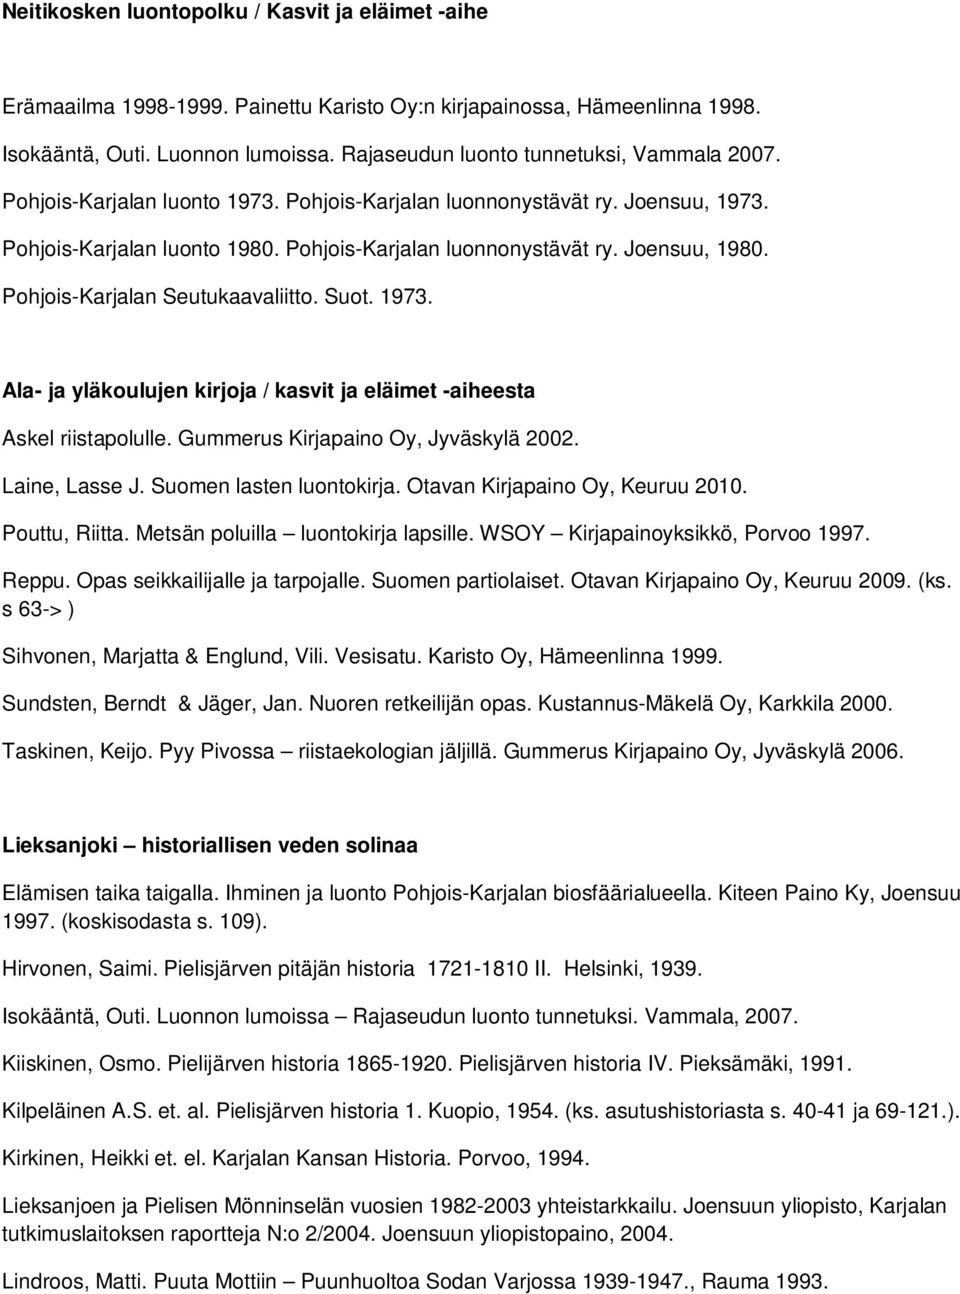 Pohjois-Karjalan Seutukaavaliitto. Suot. 1973. Ala- ja yläkoulujen kirjoja / kasvit ja eläimet -aiheesta Askel riistapolulle. Gummerus Kirjapaino Oy, Jyväskylä 2002. Laine, Lasse J.